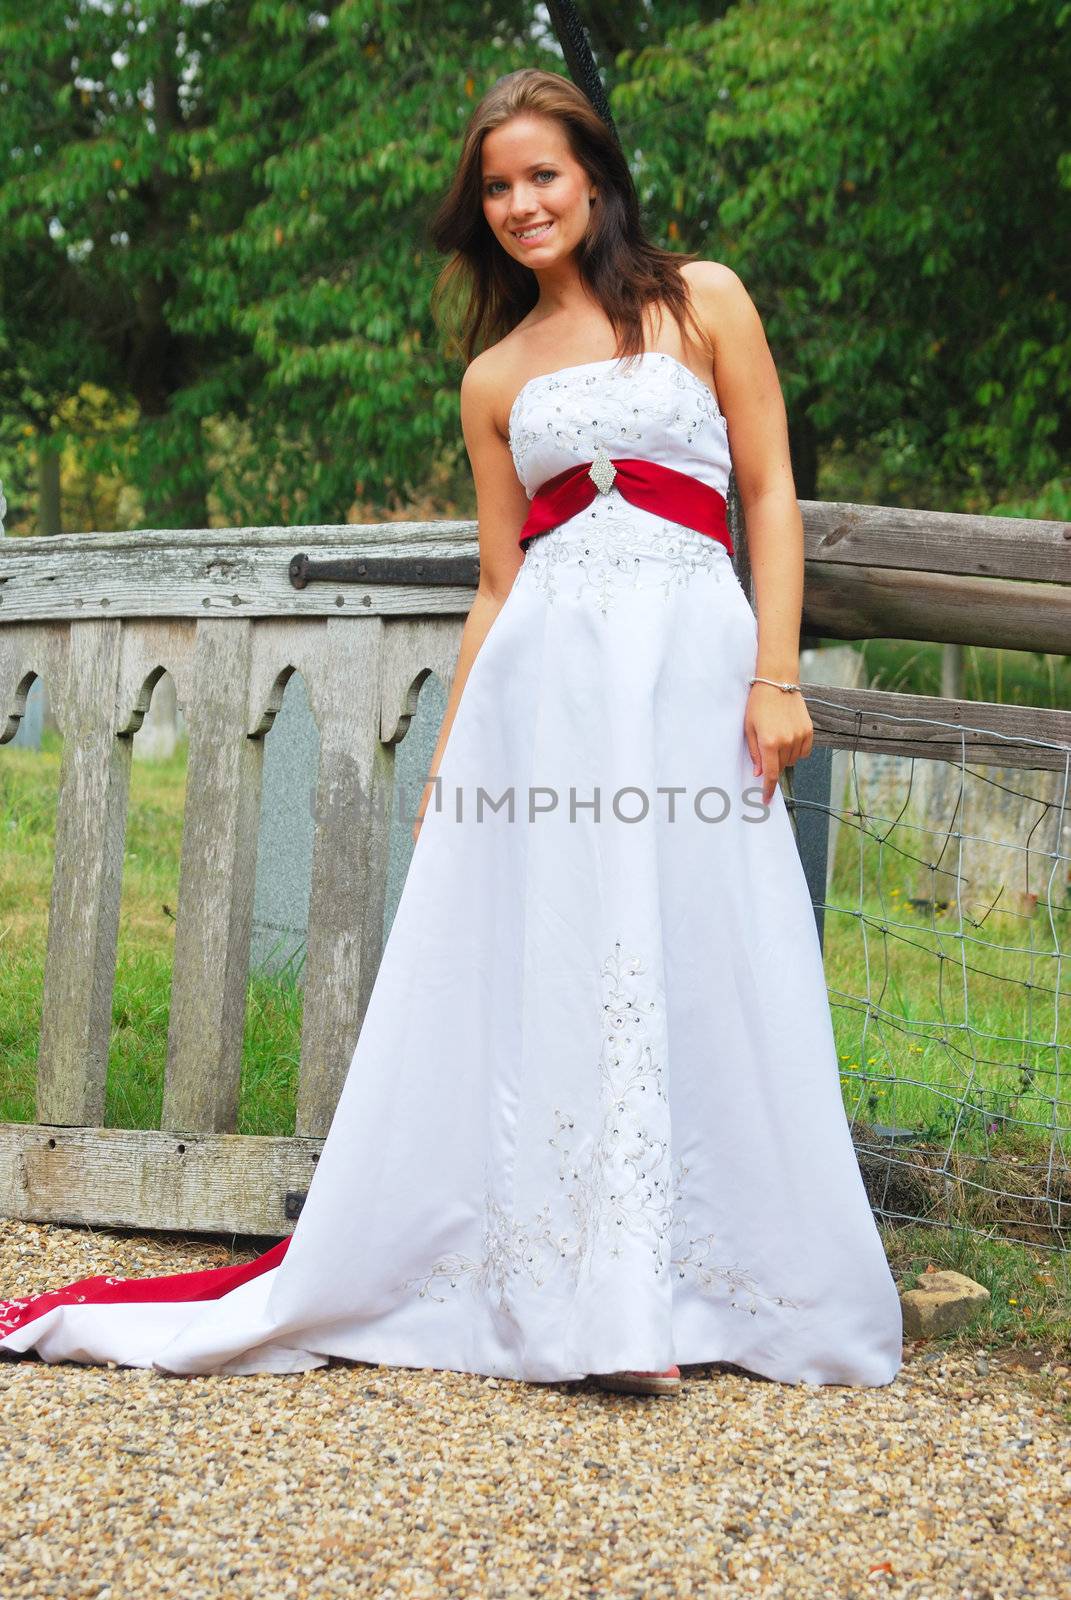 girl in wedding dress by pauws99